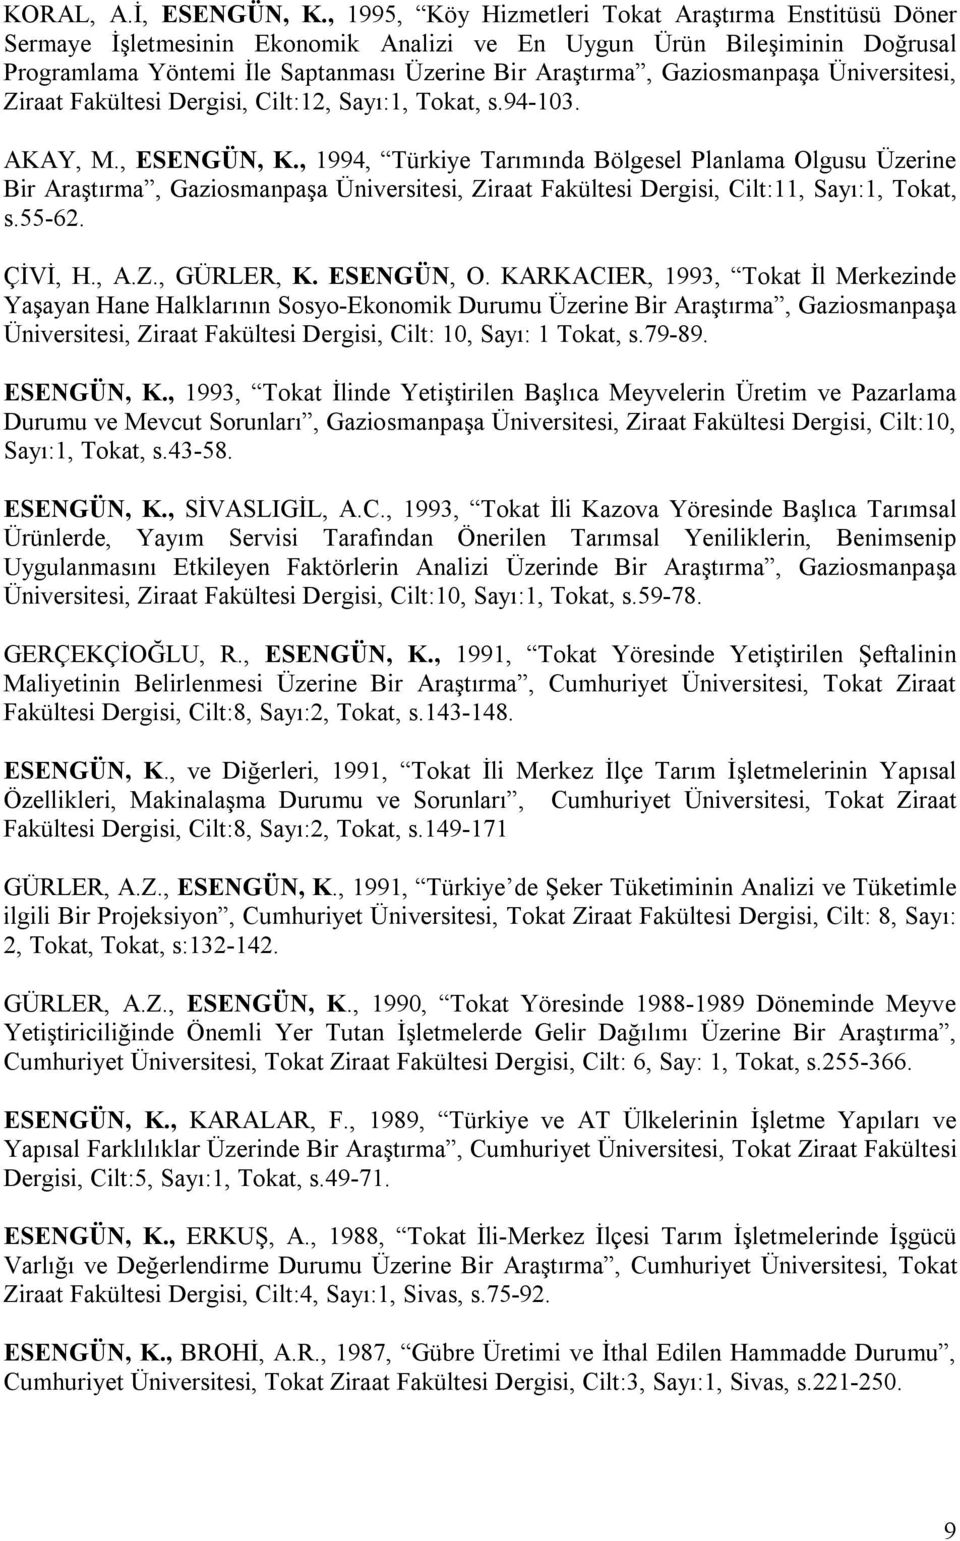 Gaziosmanpaşa Üniversitesi, Ziraat Fakültesi Dergisi, Cilt:12, Sayı:1, Tokat, s.94-103. AKAY, M., ESENGÜN, K.